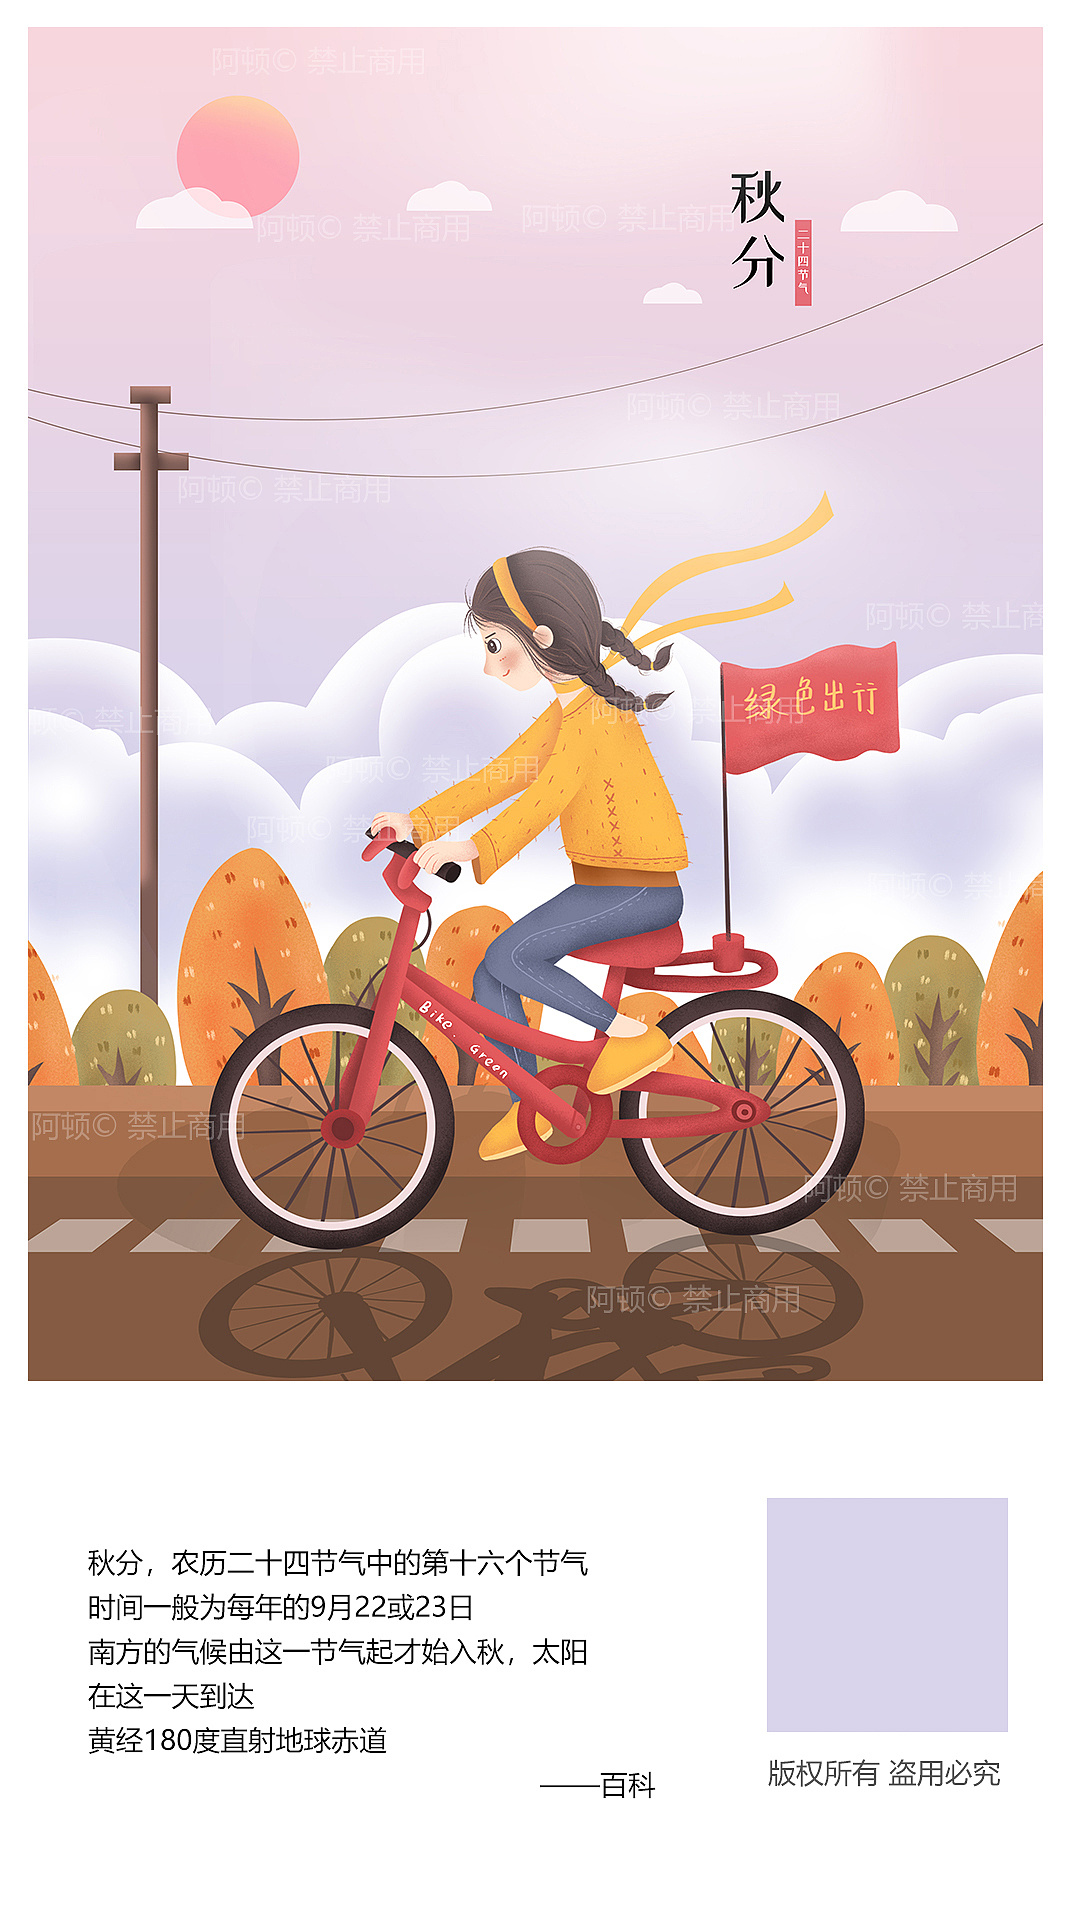 红色卡通自行车图片素材免费下载 - 觅知网